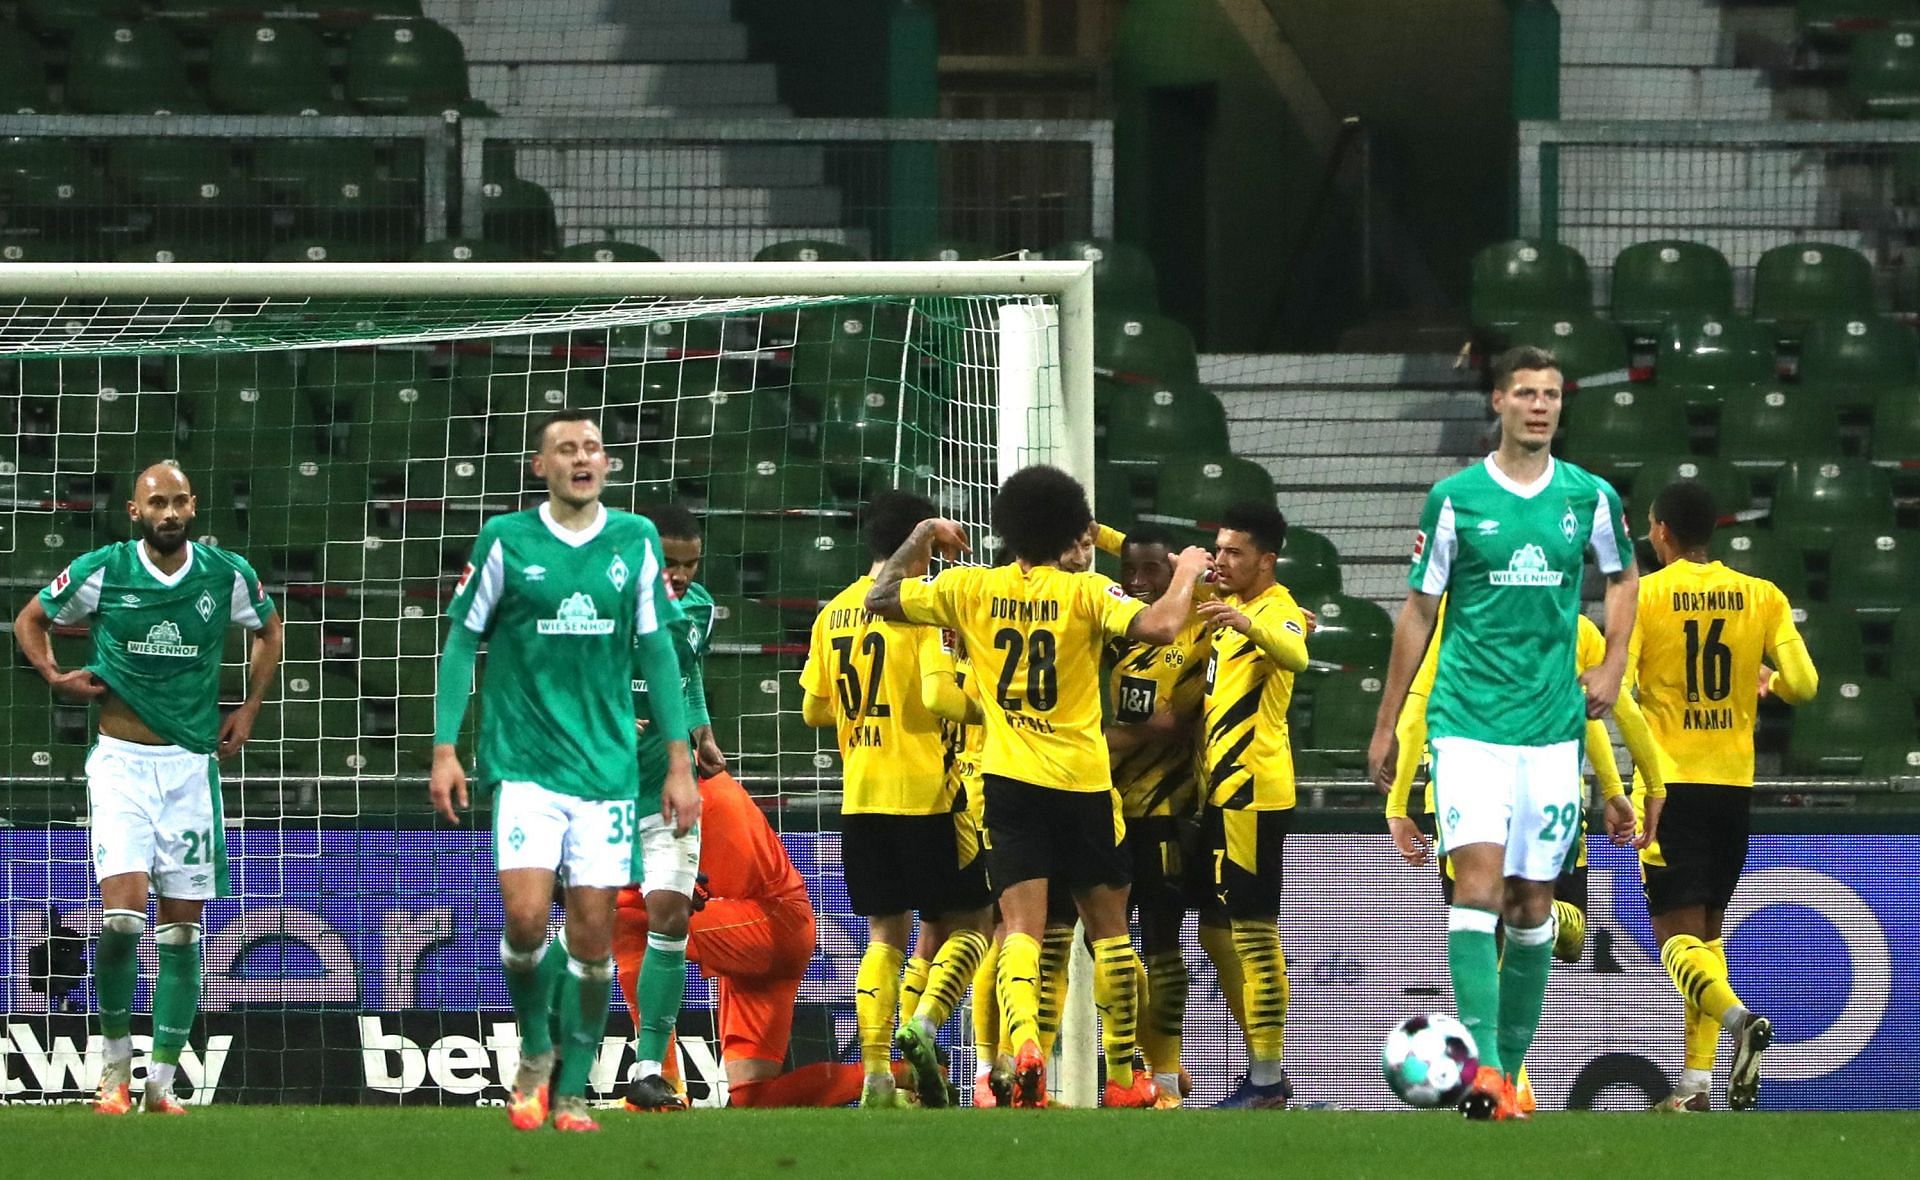 Borussia Dortmund take on Werder Bremen this weekend